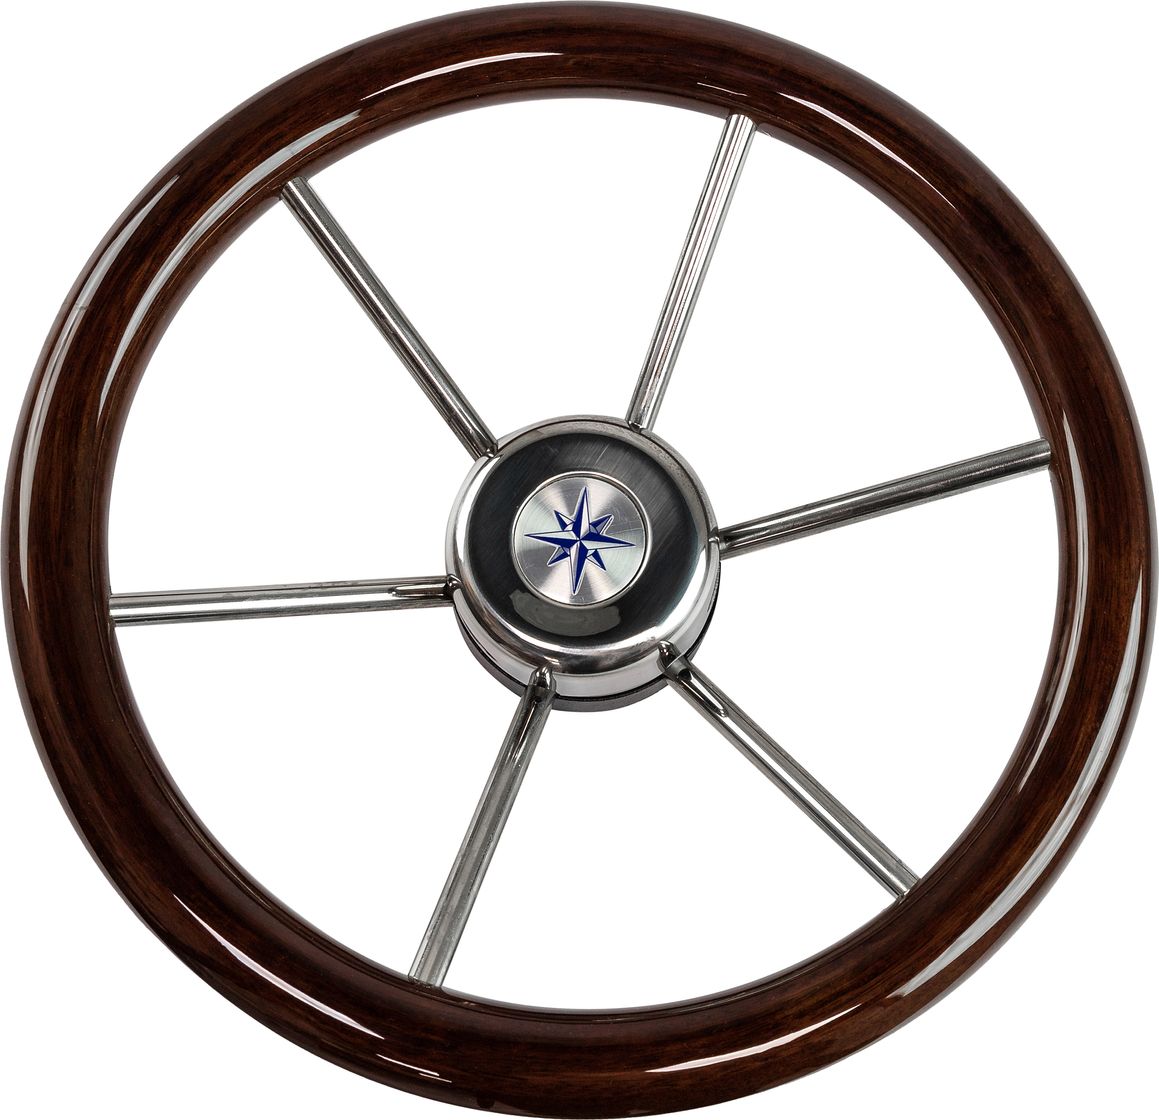 Рулевое колесо LEADER WOOD деревянный обод серебряные спицы д. 340 мм VN7340-33 рулевое колесо leader inox нержавеющий обод серебряные спицы д 320 мм vn7332 22